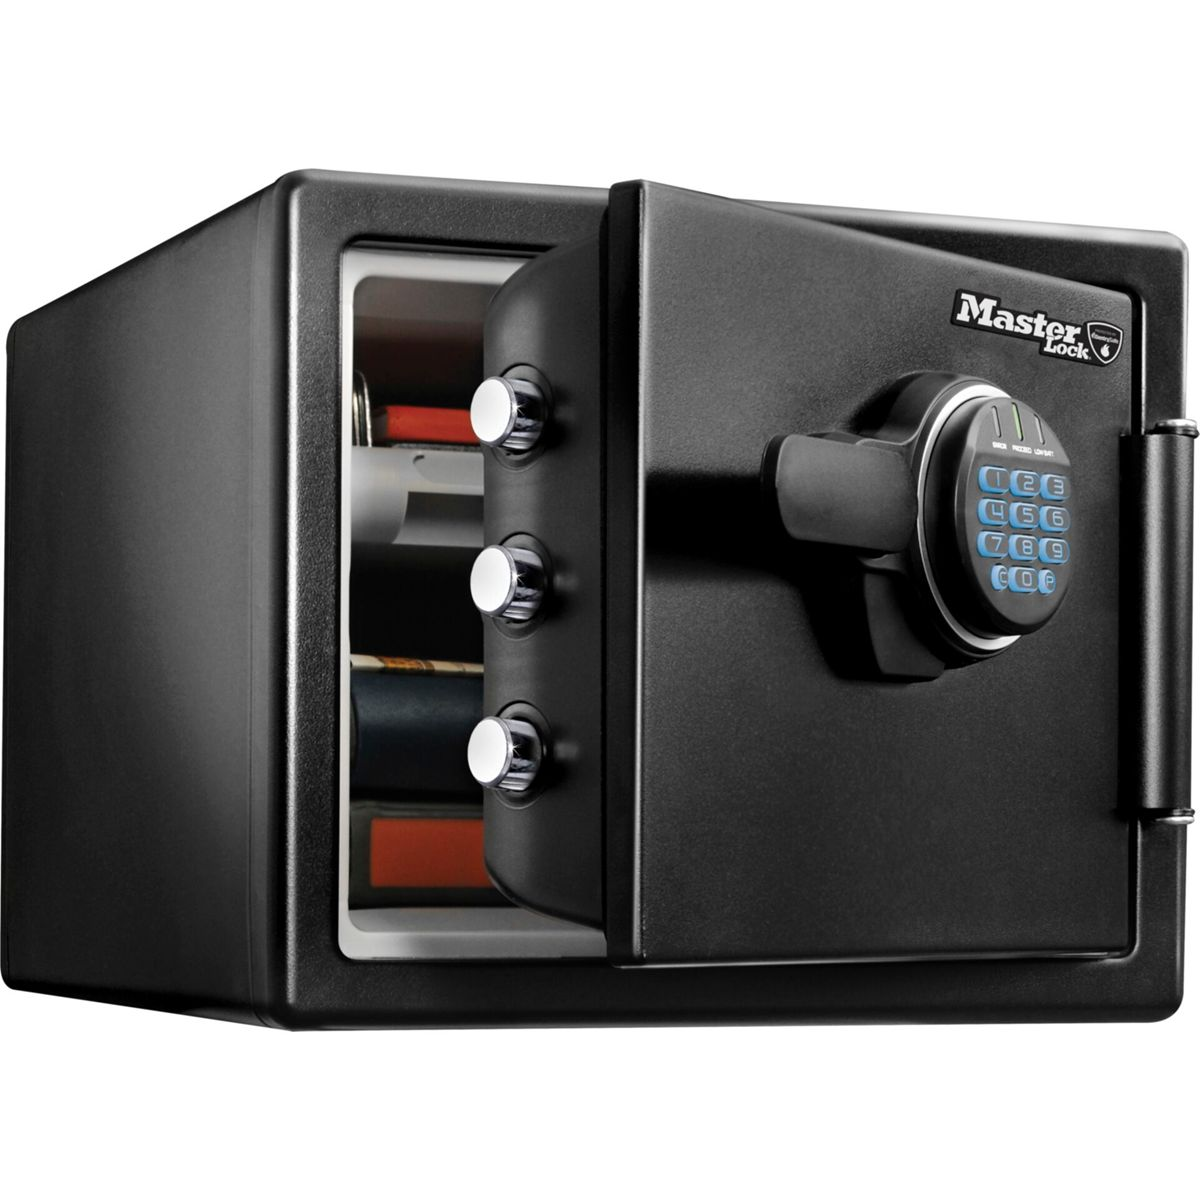 Master digitaler Sicherheitssafe Tresor LFW082FTC MASTERLOCK Kombination mit Lock schwarz